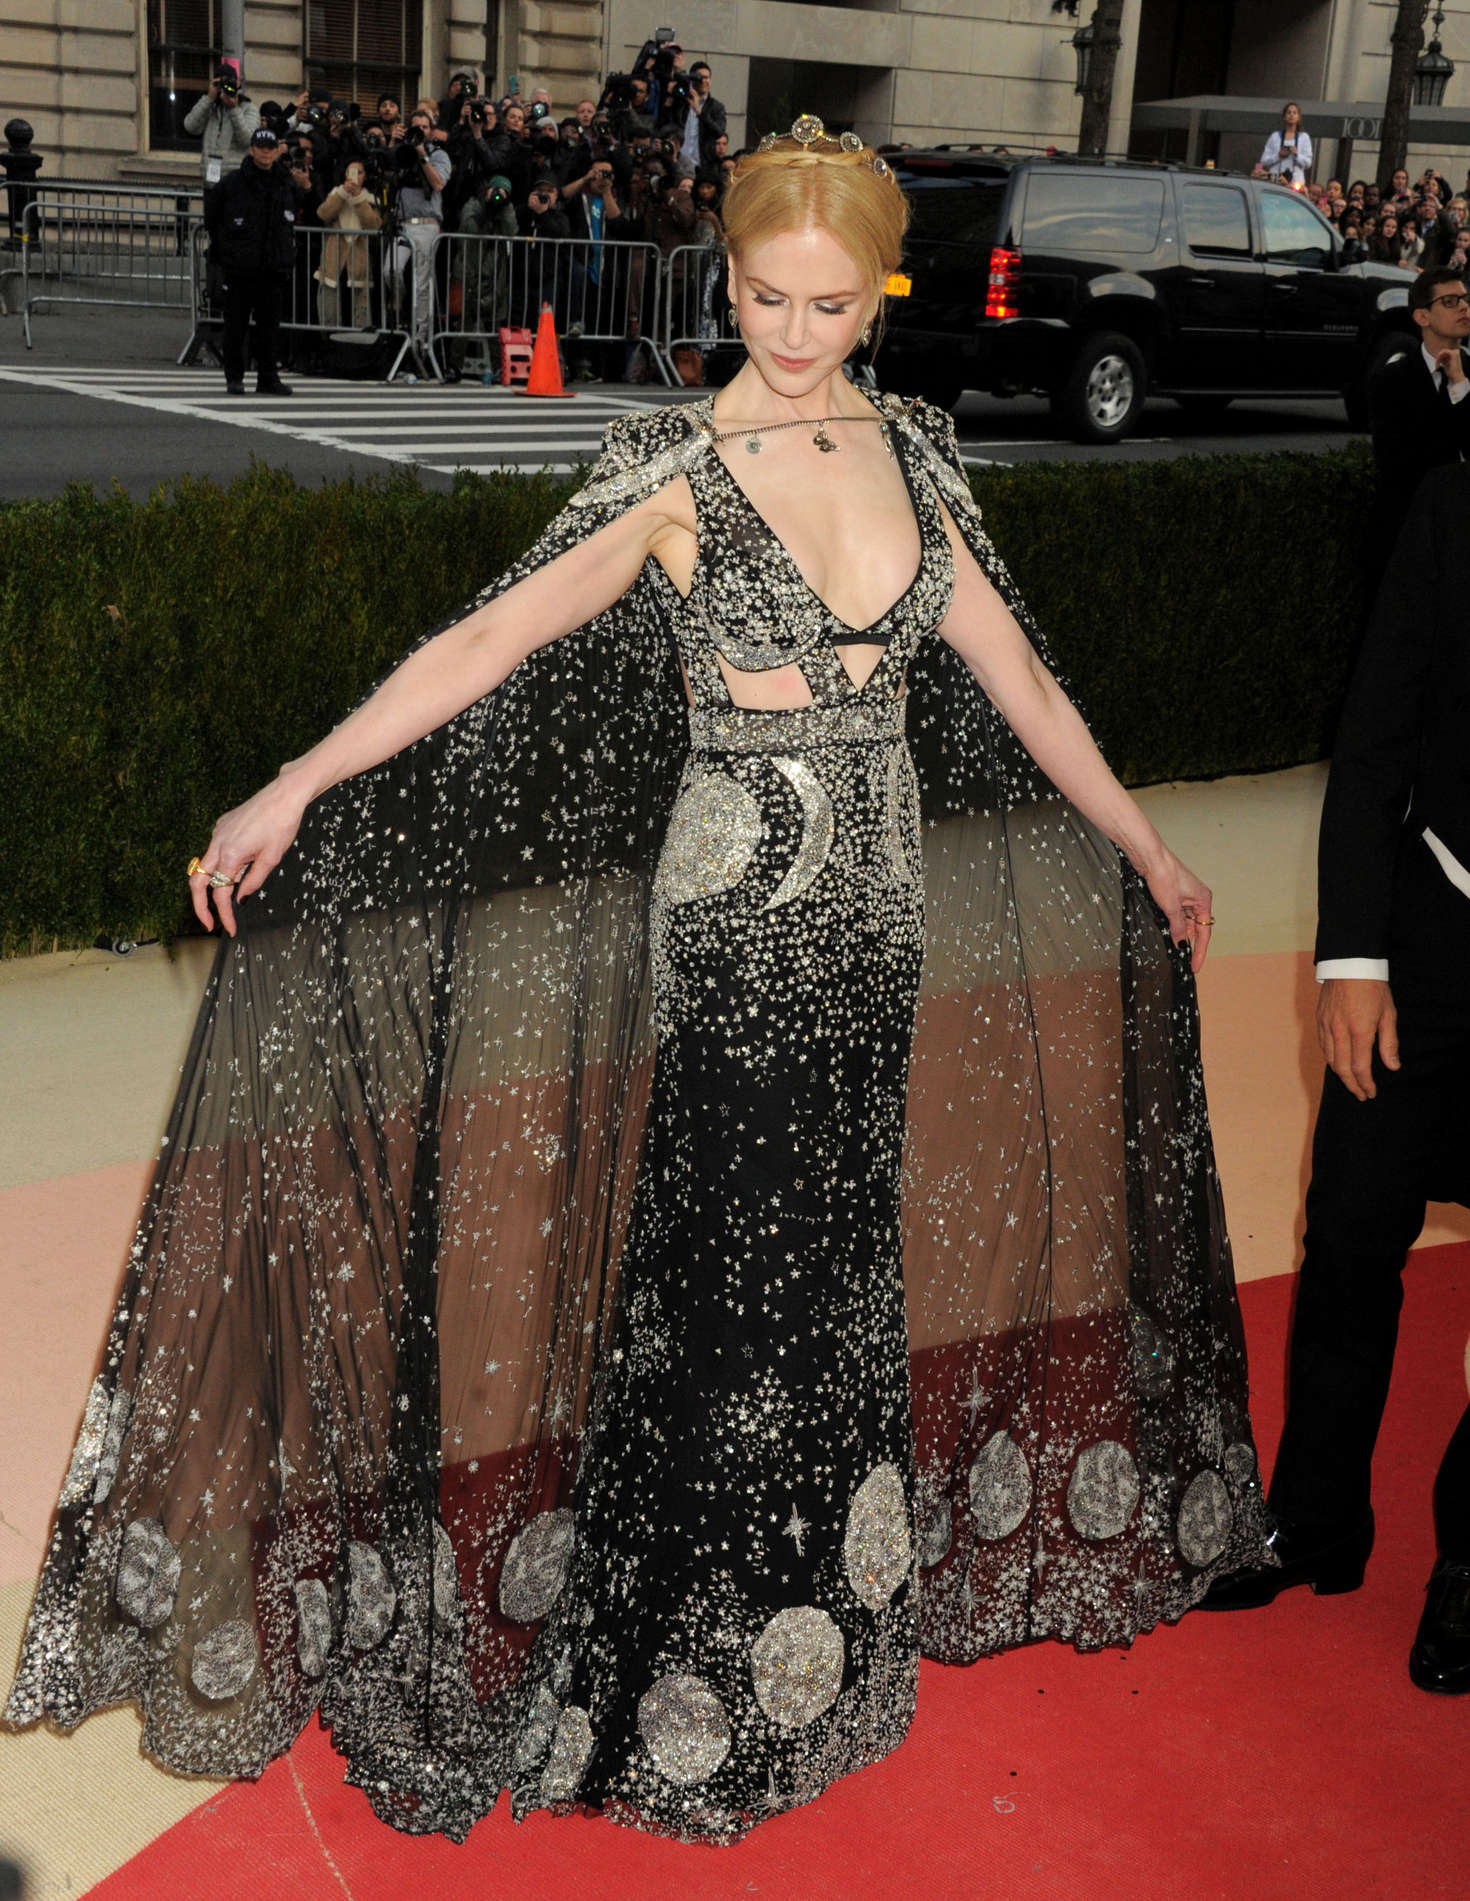 Nicole Kidman ma mị khi xuất hiện tại MET Gala 2016 trong thiết kế với họa tiết lấy cảm hứng từ chiêm tinh học của nhà mốt Alexander McQueen.